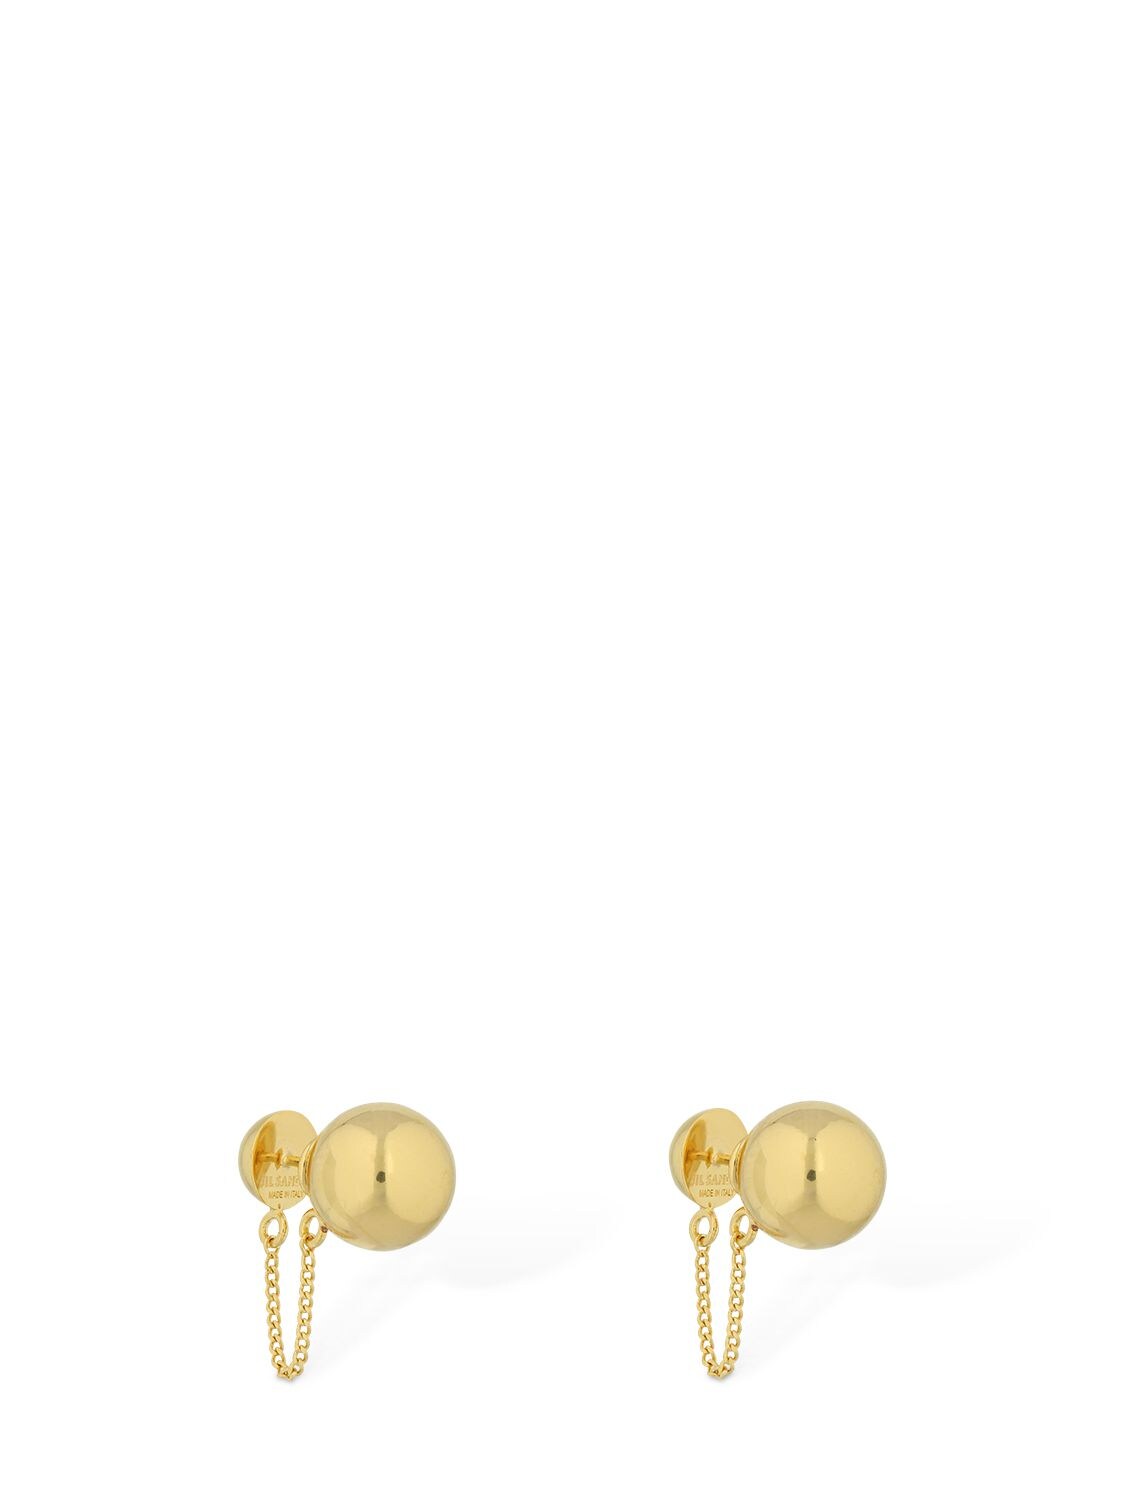 JIL SANDER Small Sphere Stud Earrings W/ Chain